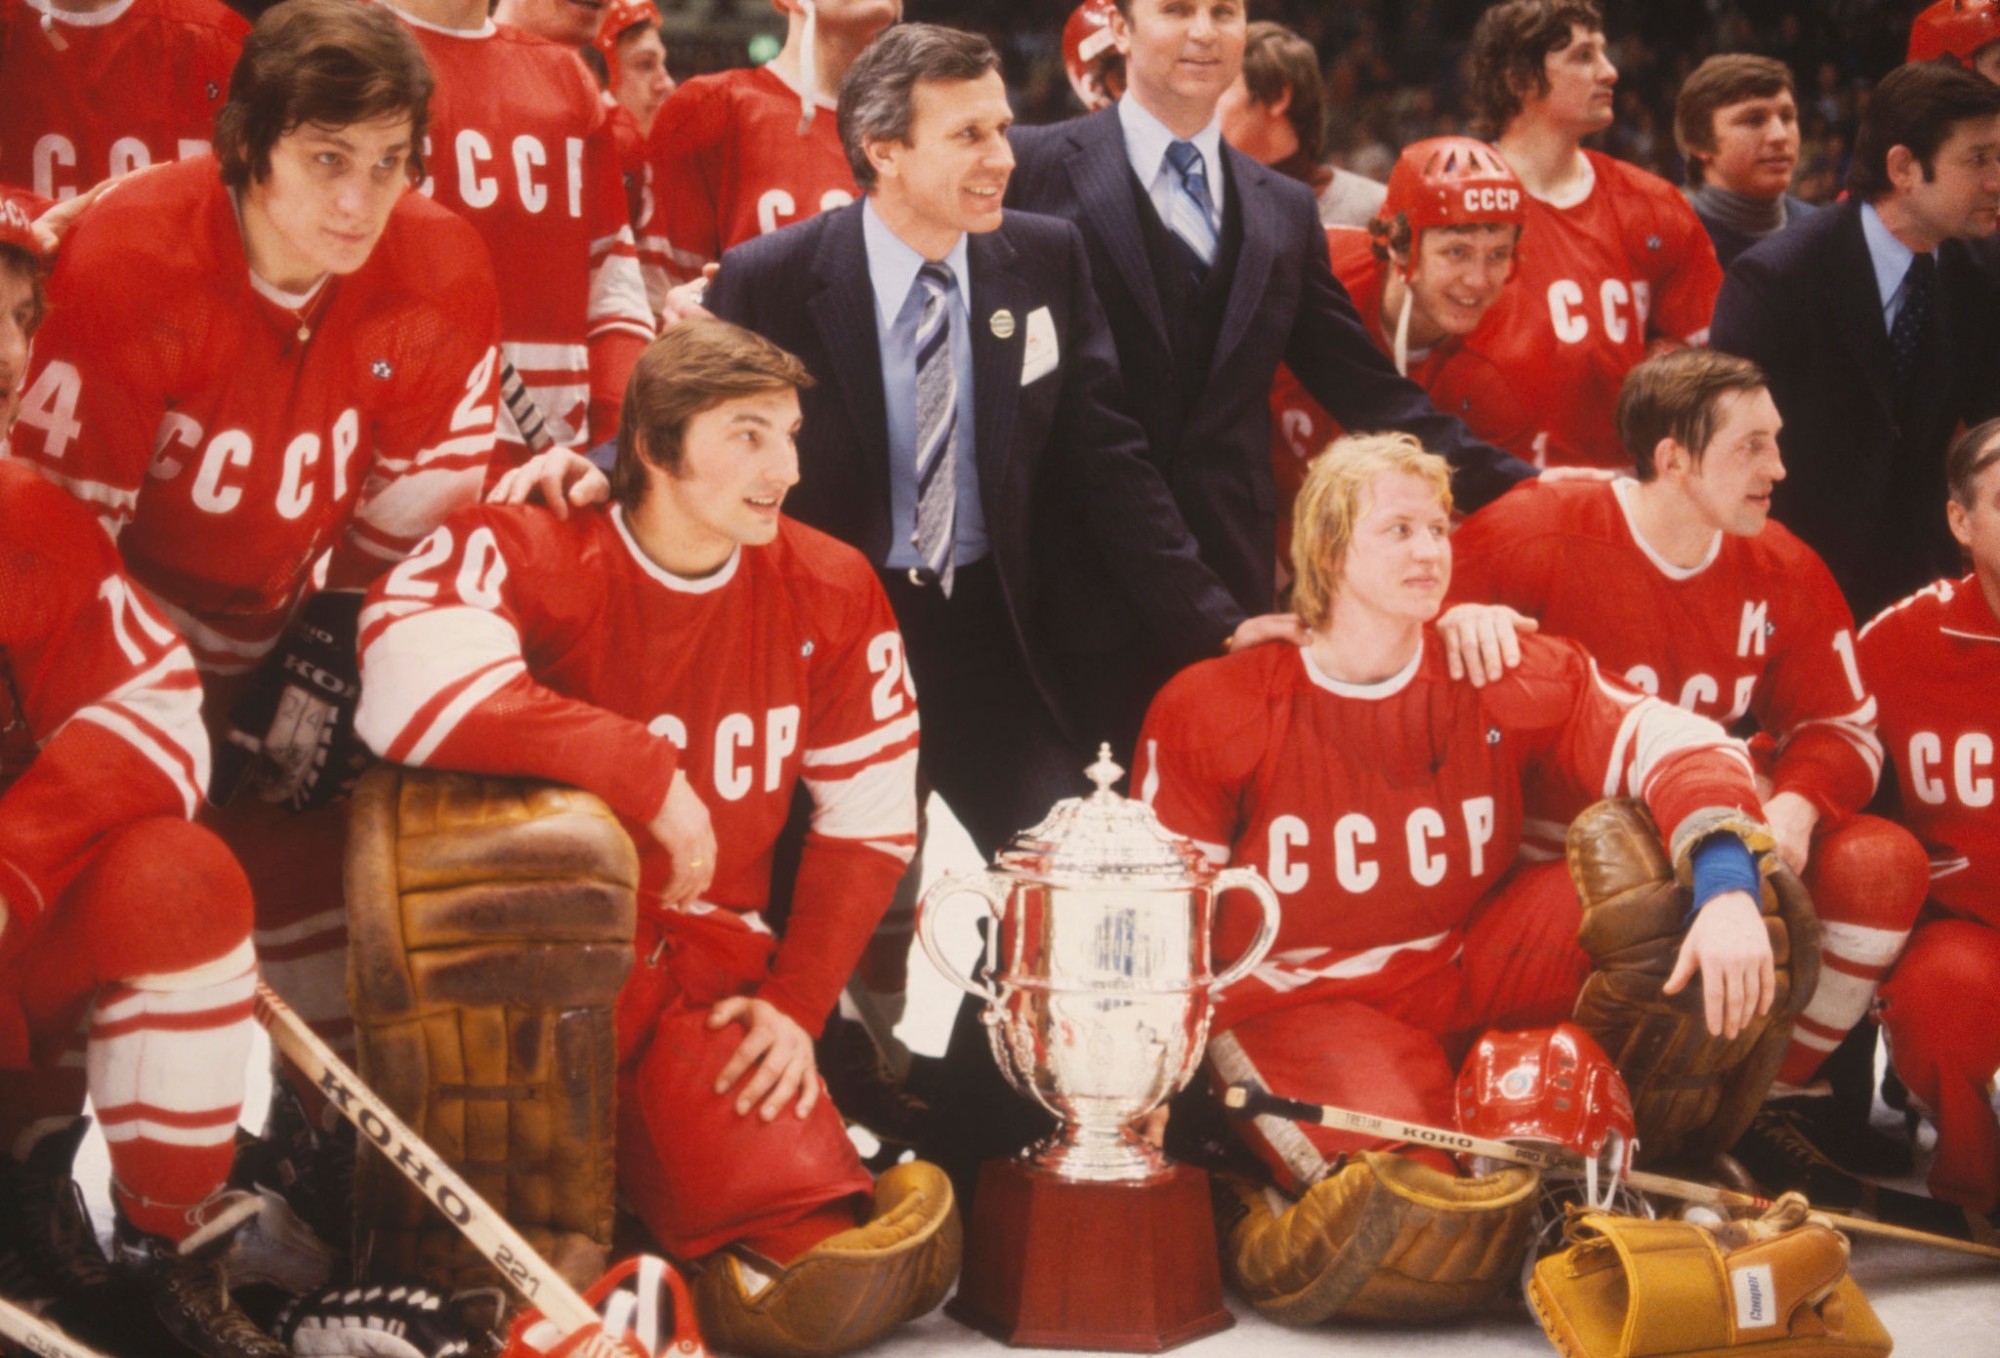 1979 финал между сборными хоккея СССР и Канады закончился co счетом 6-0